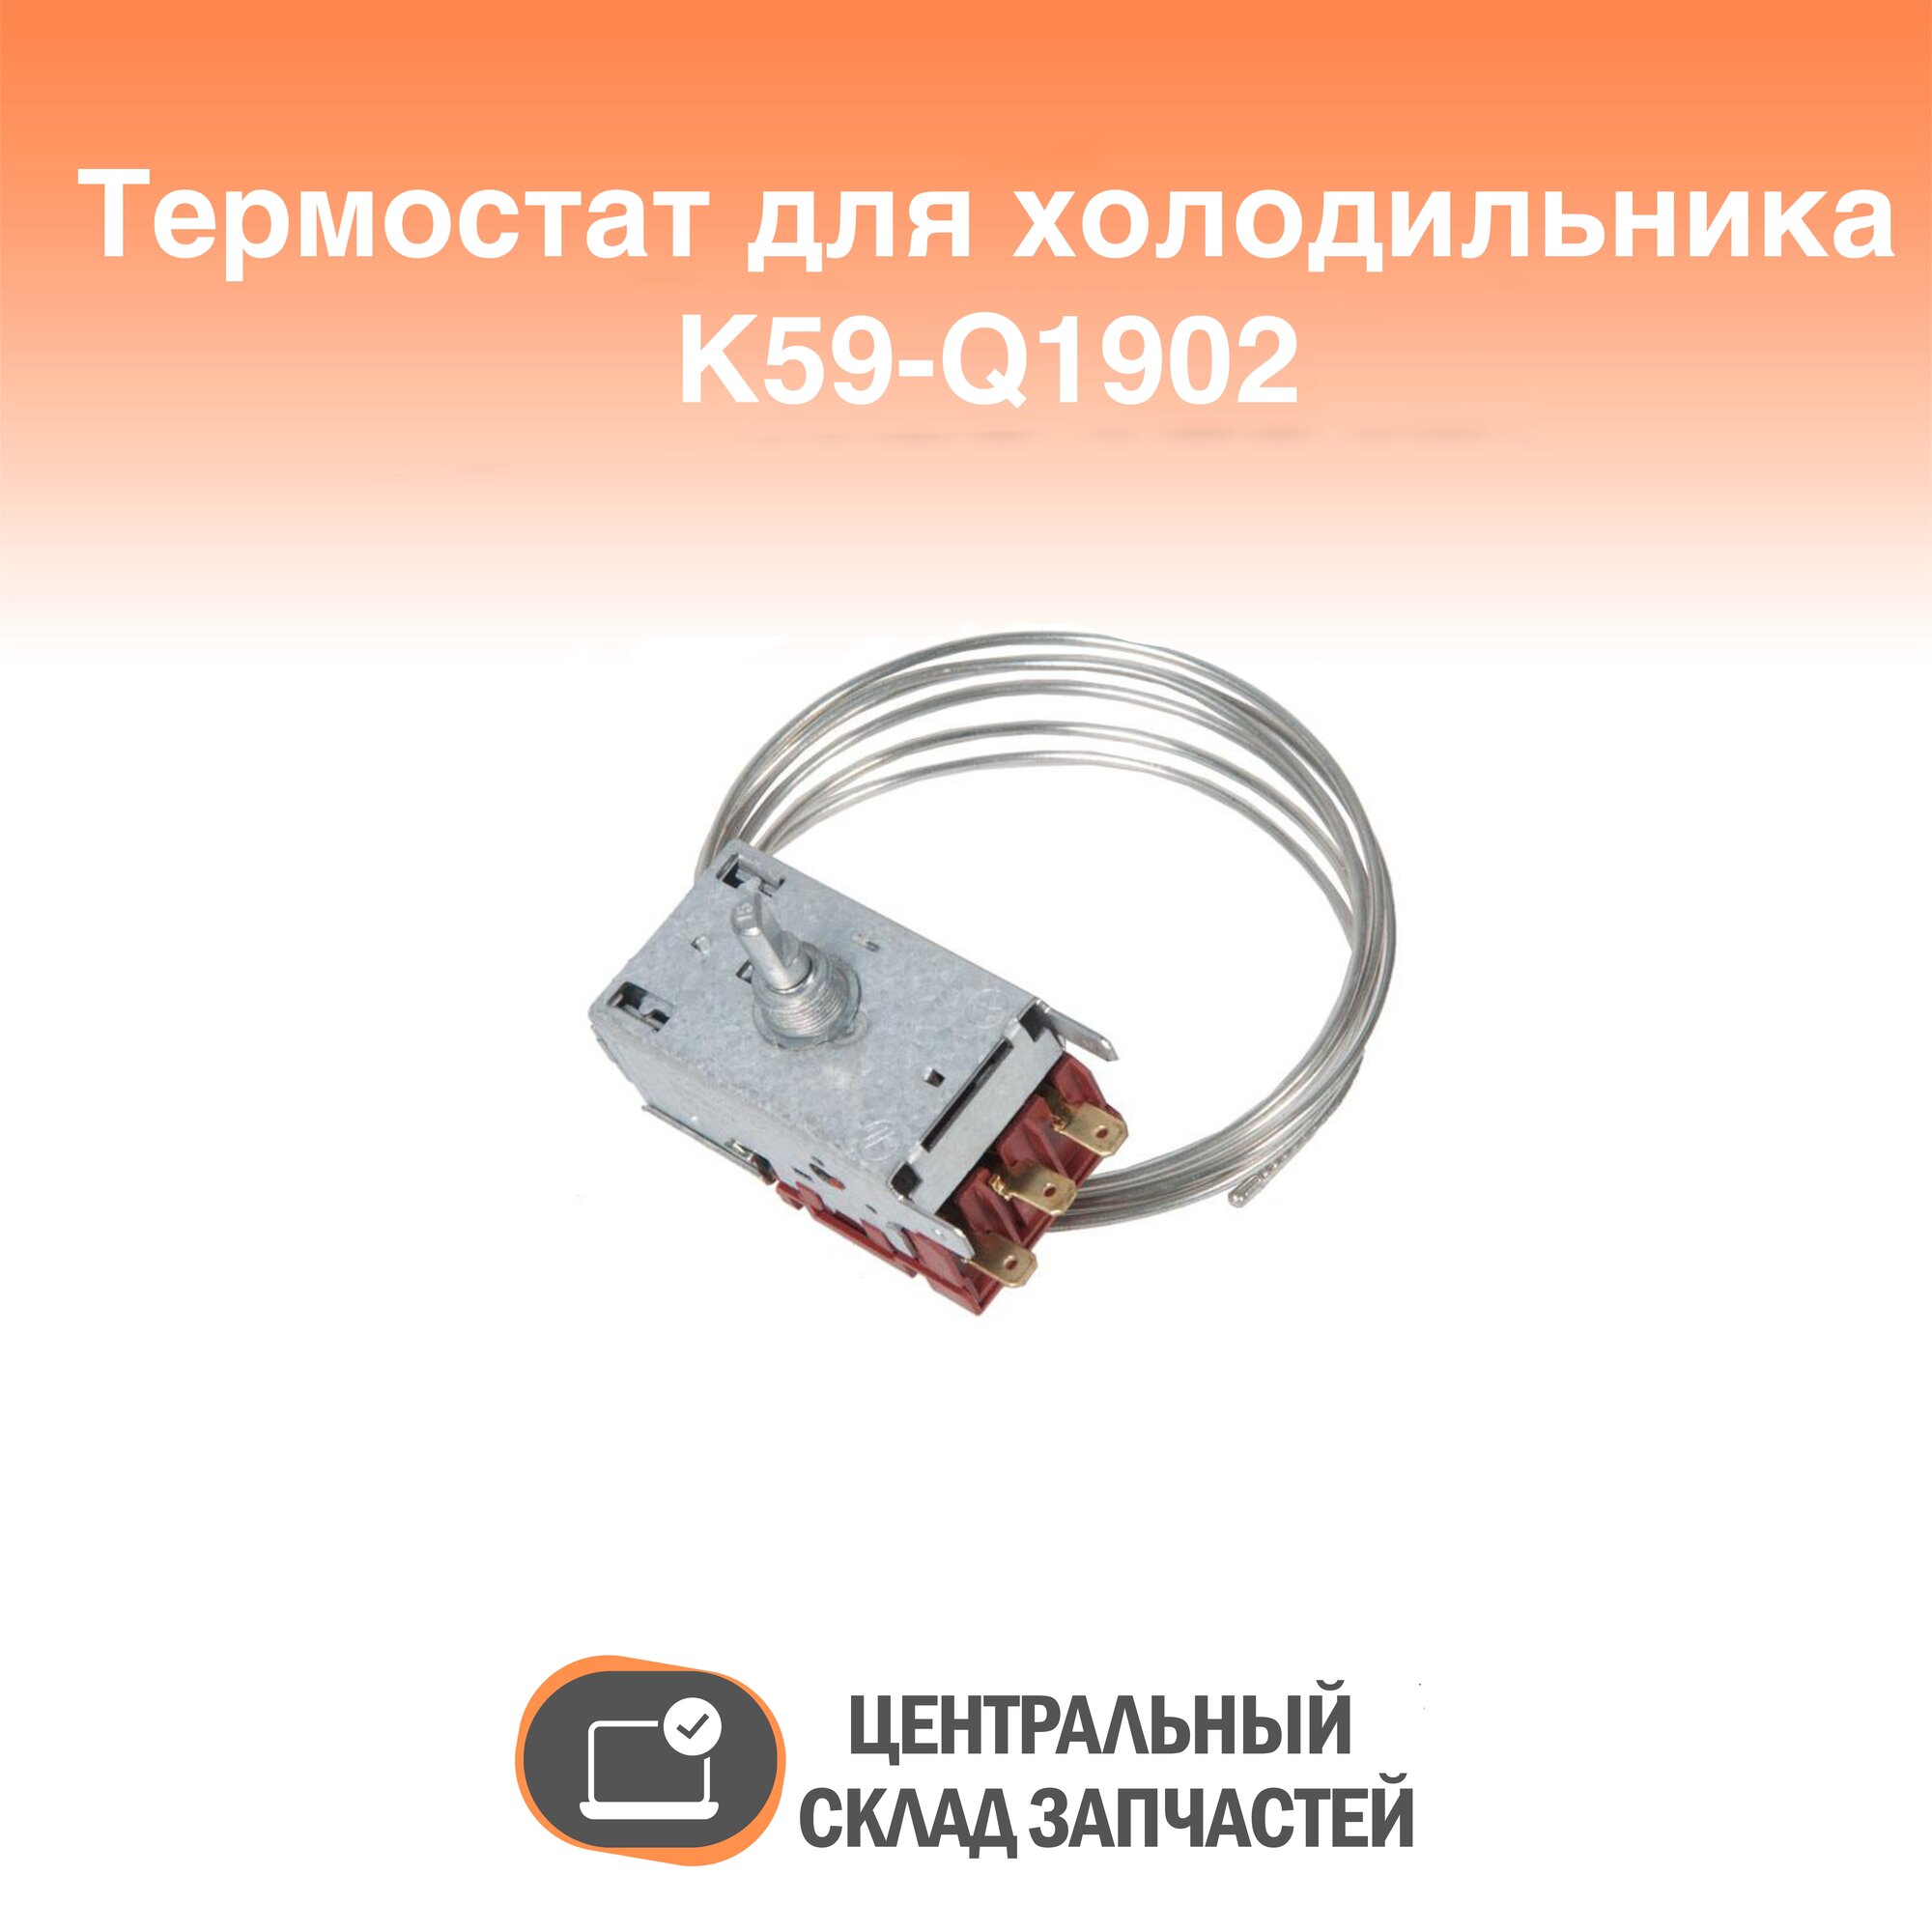 K59-Q1902 Термостат для холодильника K59-Q1902 (капилляр 1,5м) без ПВХ